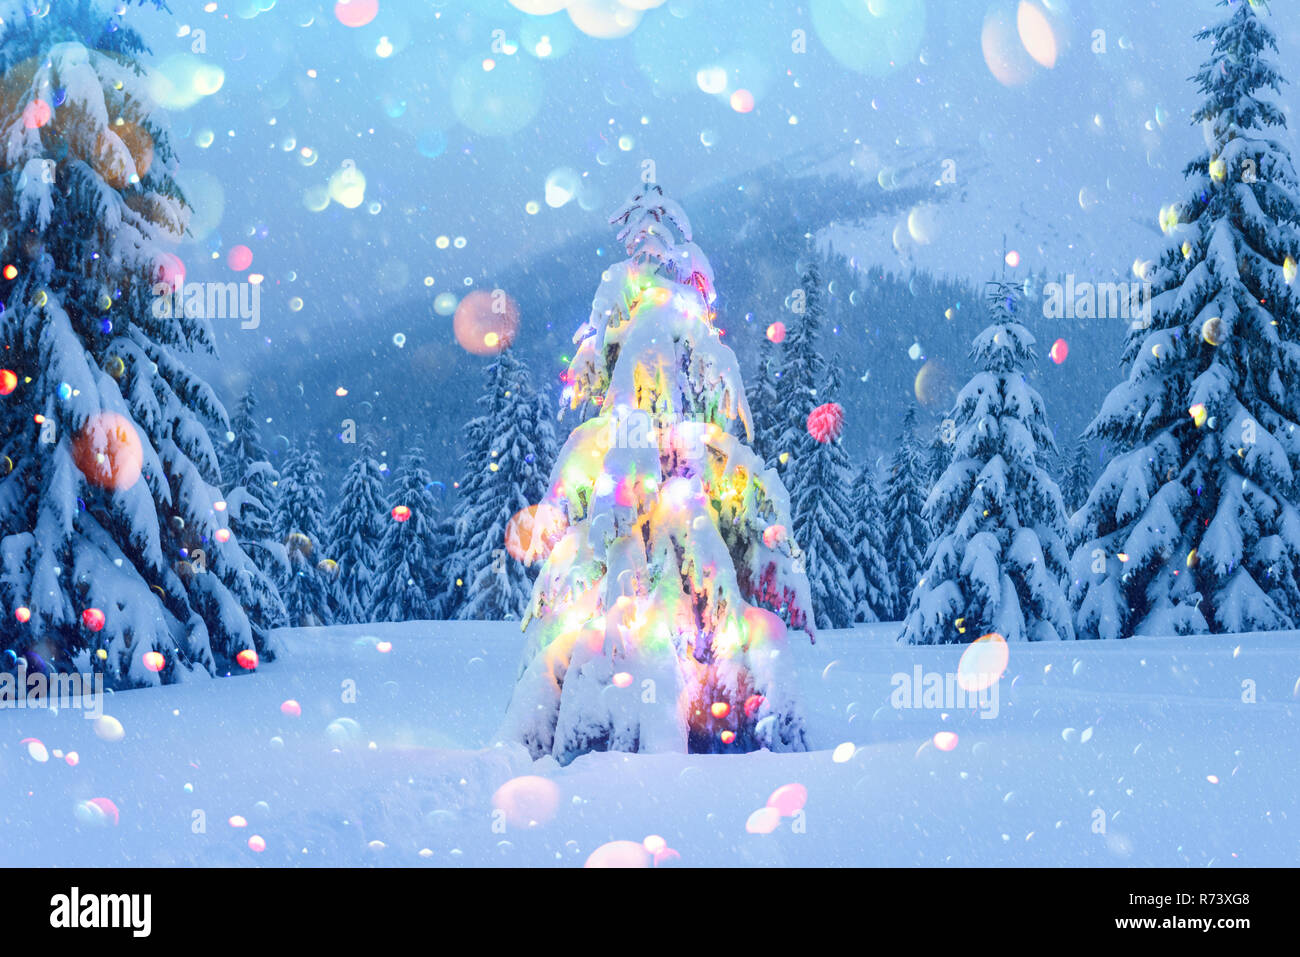 Urlaub Landschaft mit Weihnachtsbaum, Schnee und leuchten im Winter Berge. Neues Jahr feier Postkarte Collage. DOF bokeh Licht postprocessing Effekt Stockfoto